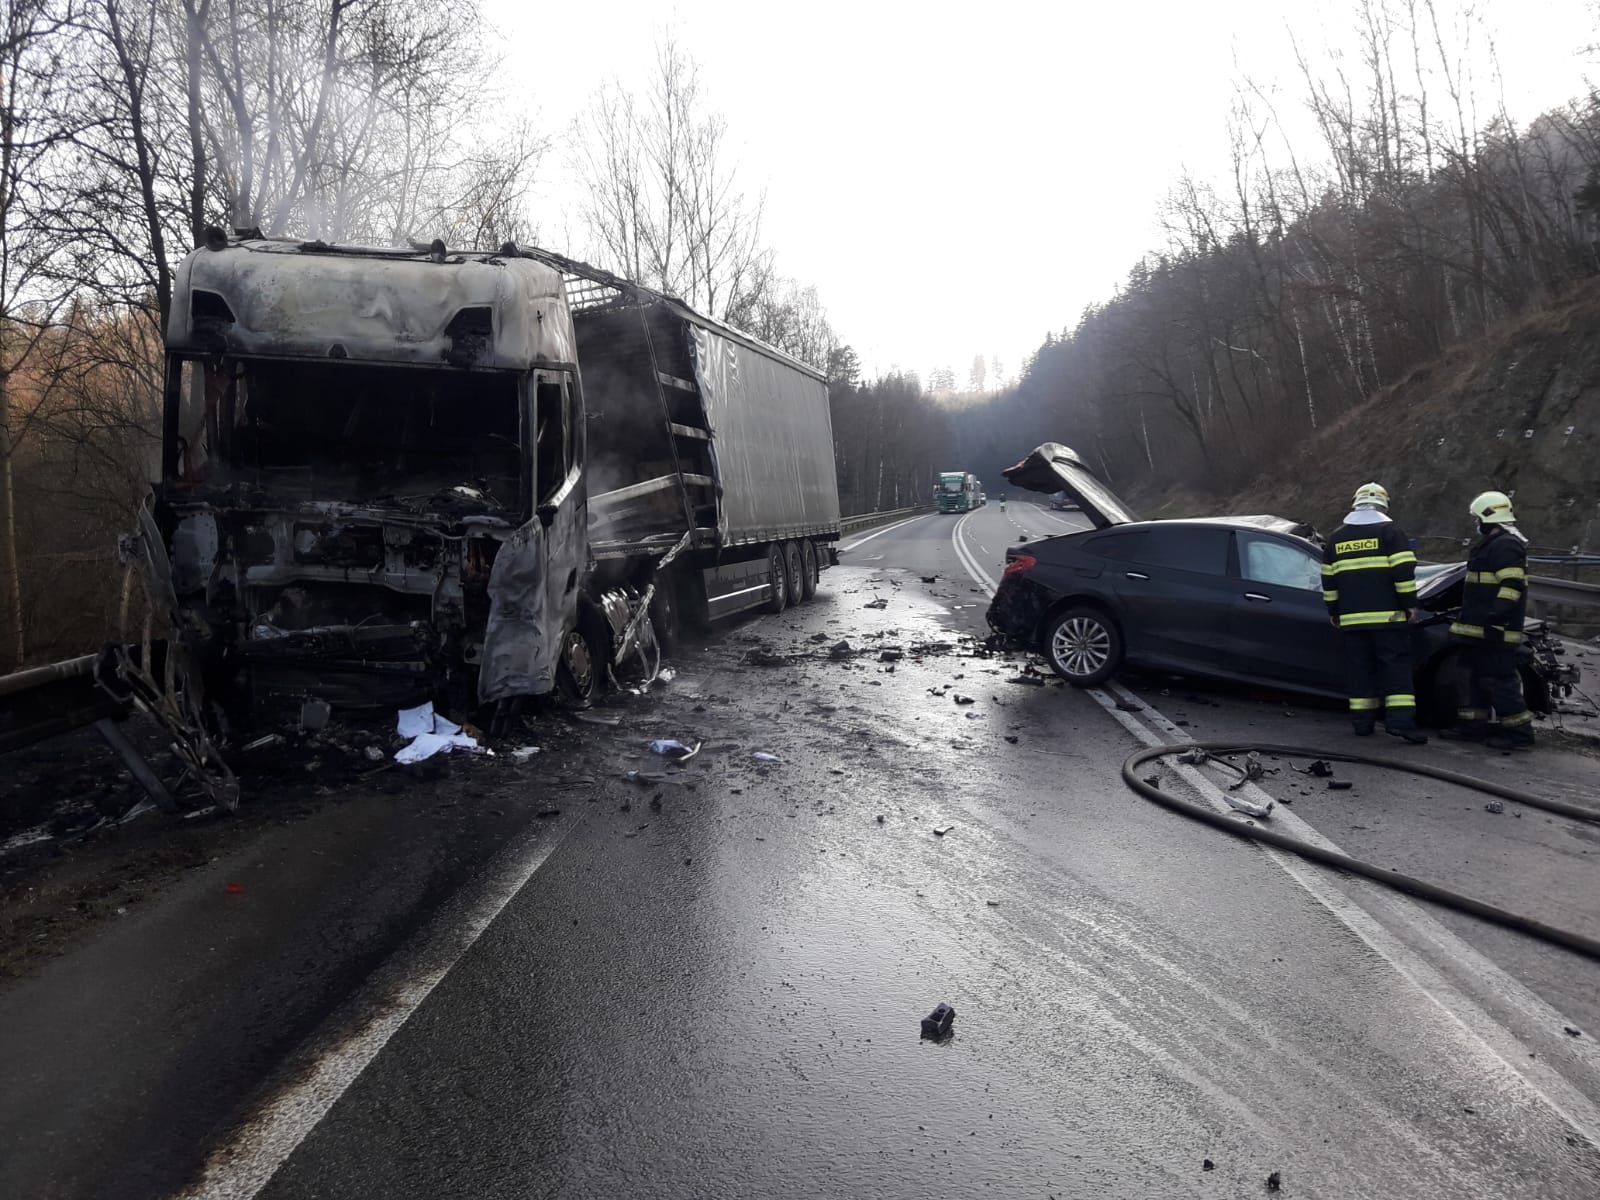 016 - Dopravní nehoda s následným požárem u Votic.jpg